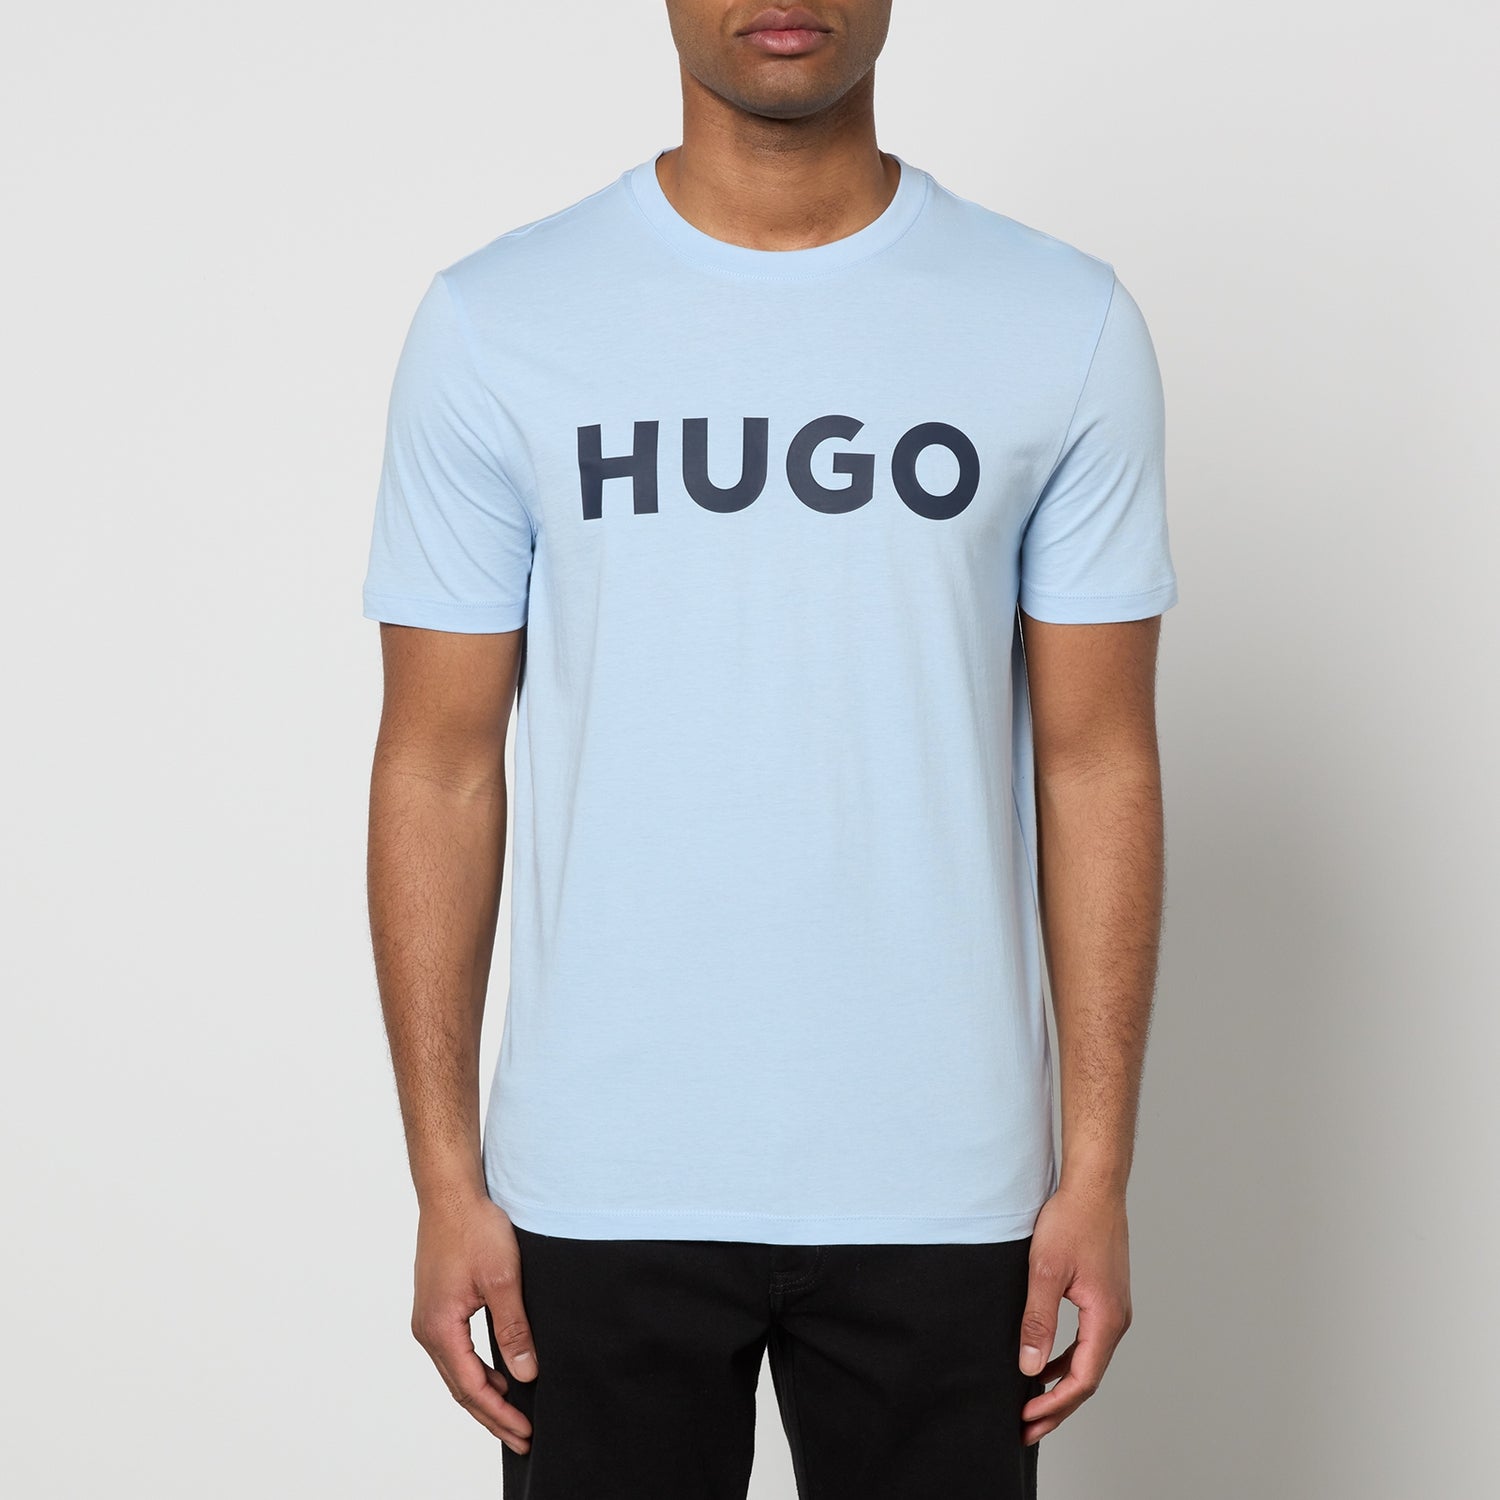 HUGO Dulivio Cotton T-Shirt - XL